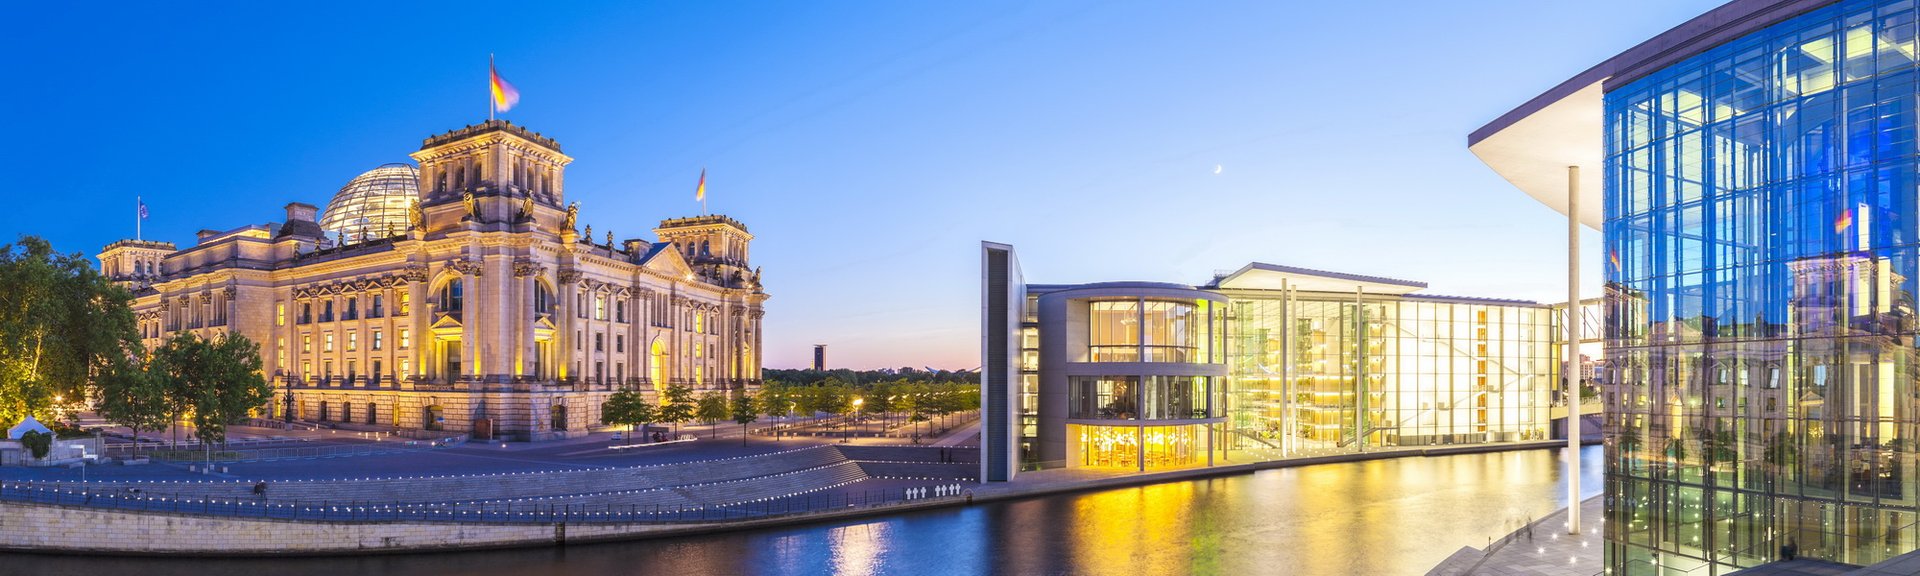 Berlin i detaljer – Berlin-Mitte i et overblik